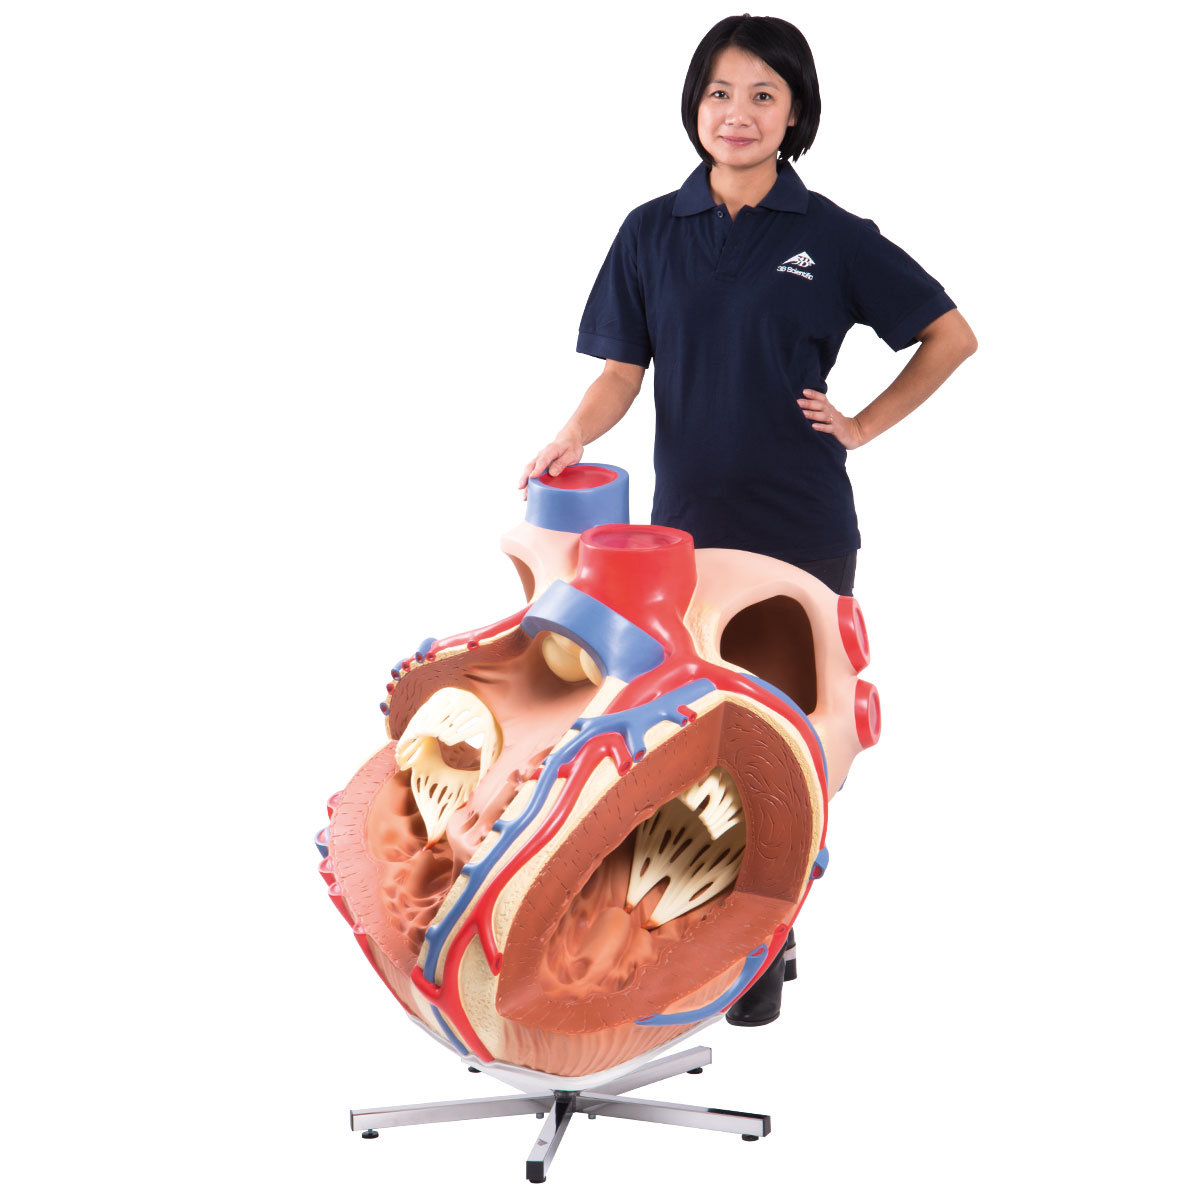 Riesen Herzmodell, 8-fache Größe - 3B Smart Anatomy, Bestellnummer 1001244, VD250, 3B Scientific